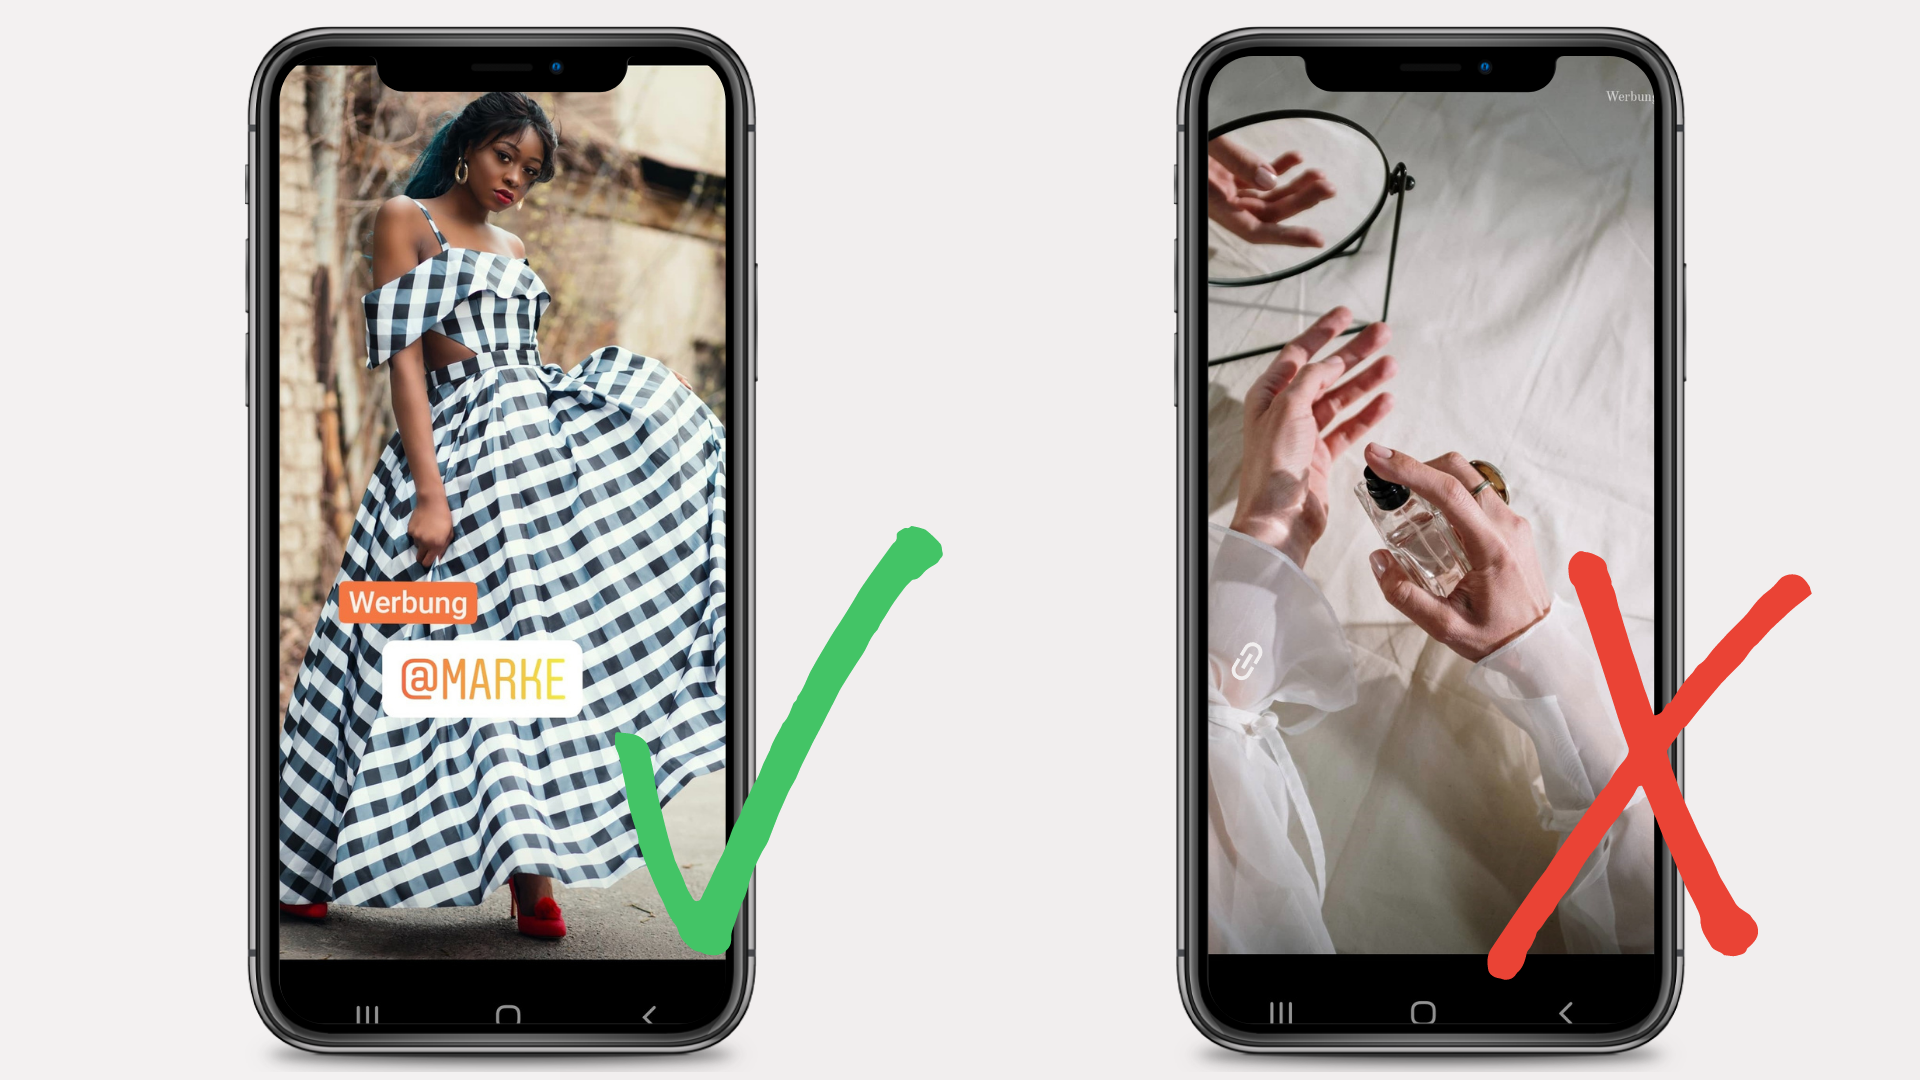 Beispiel für Instagram-Werbung richtig kennzeichnen in IG-Story: Werbung deutlich und sichtbar gesetzt vs. Werbung schlecht lesbar